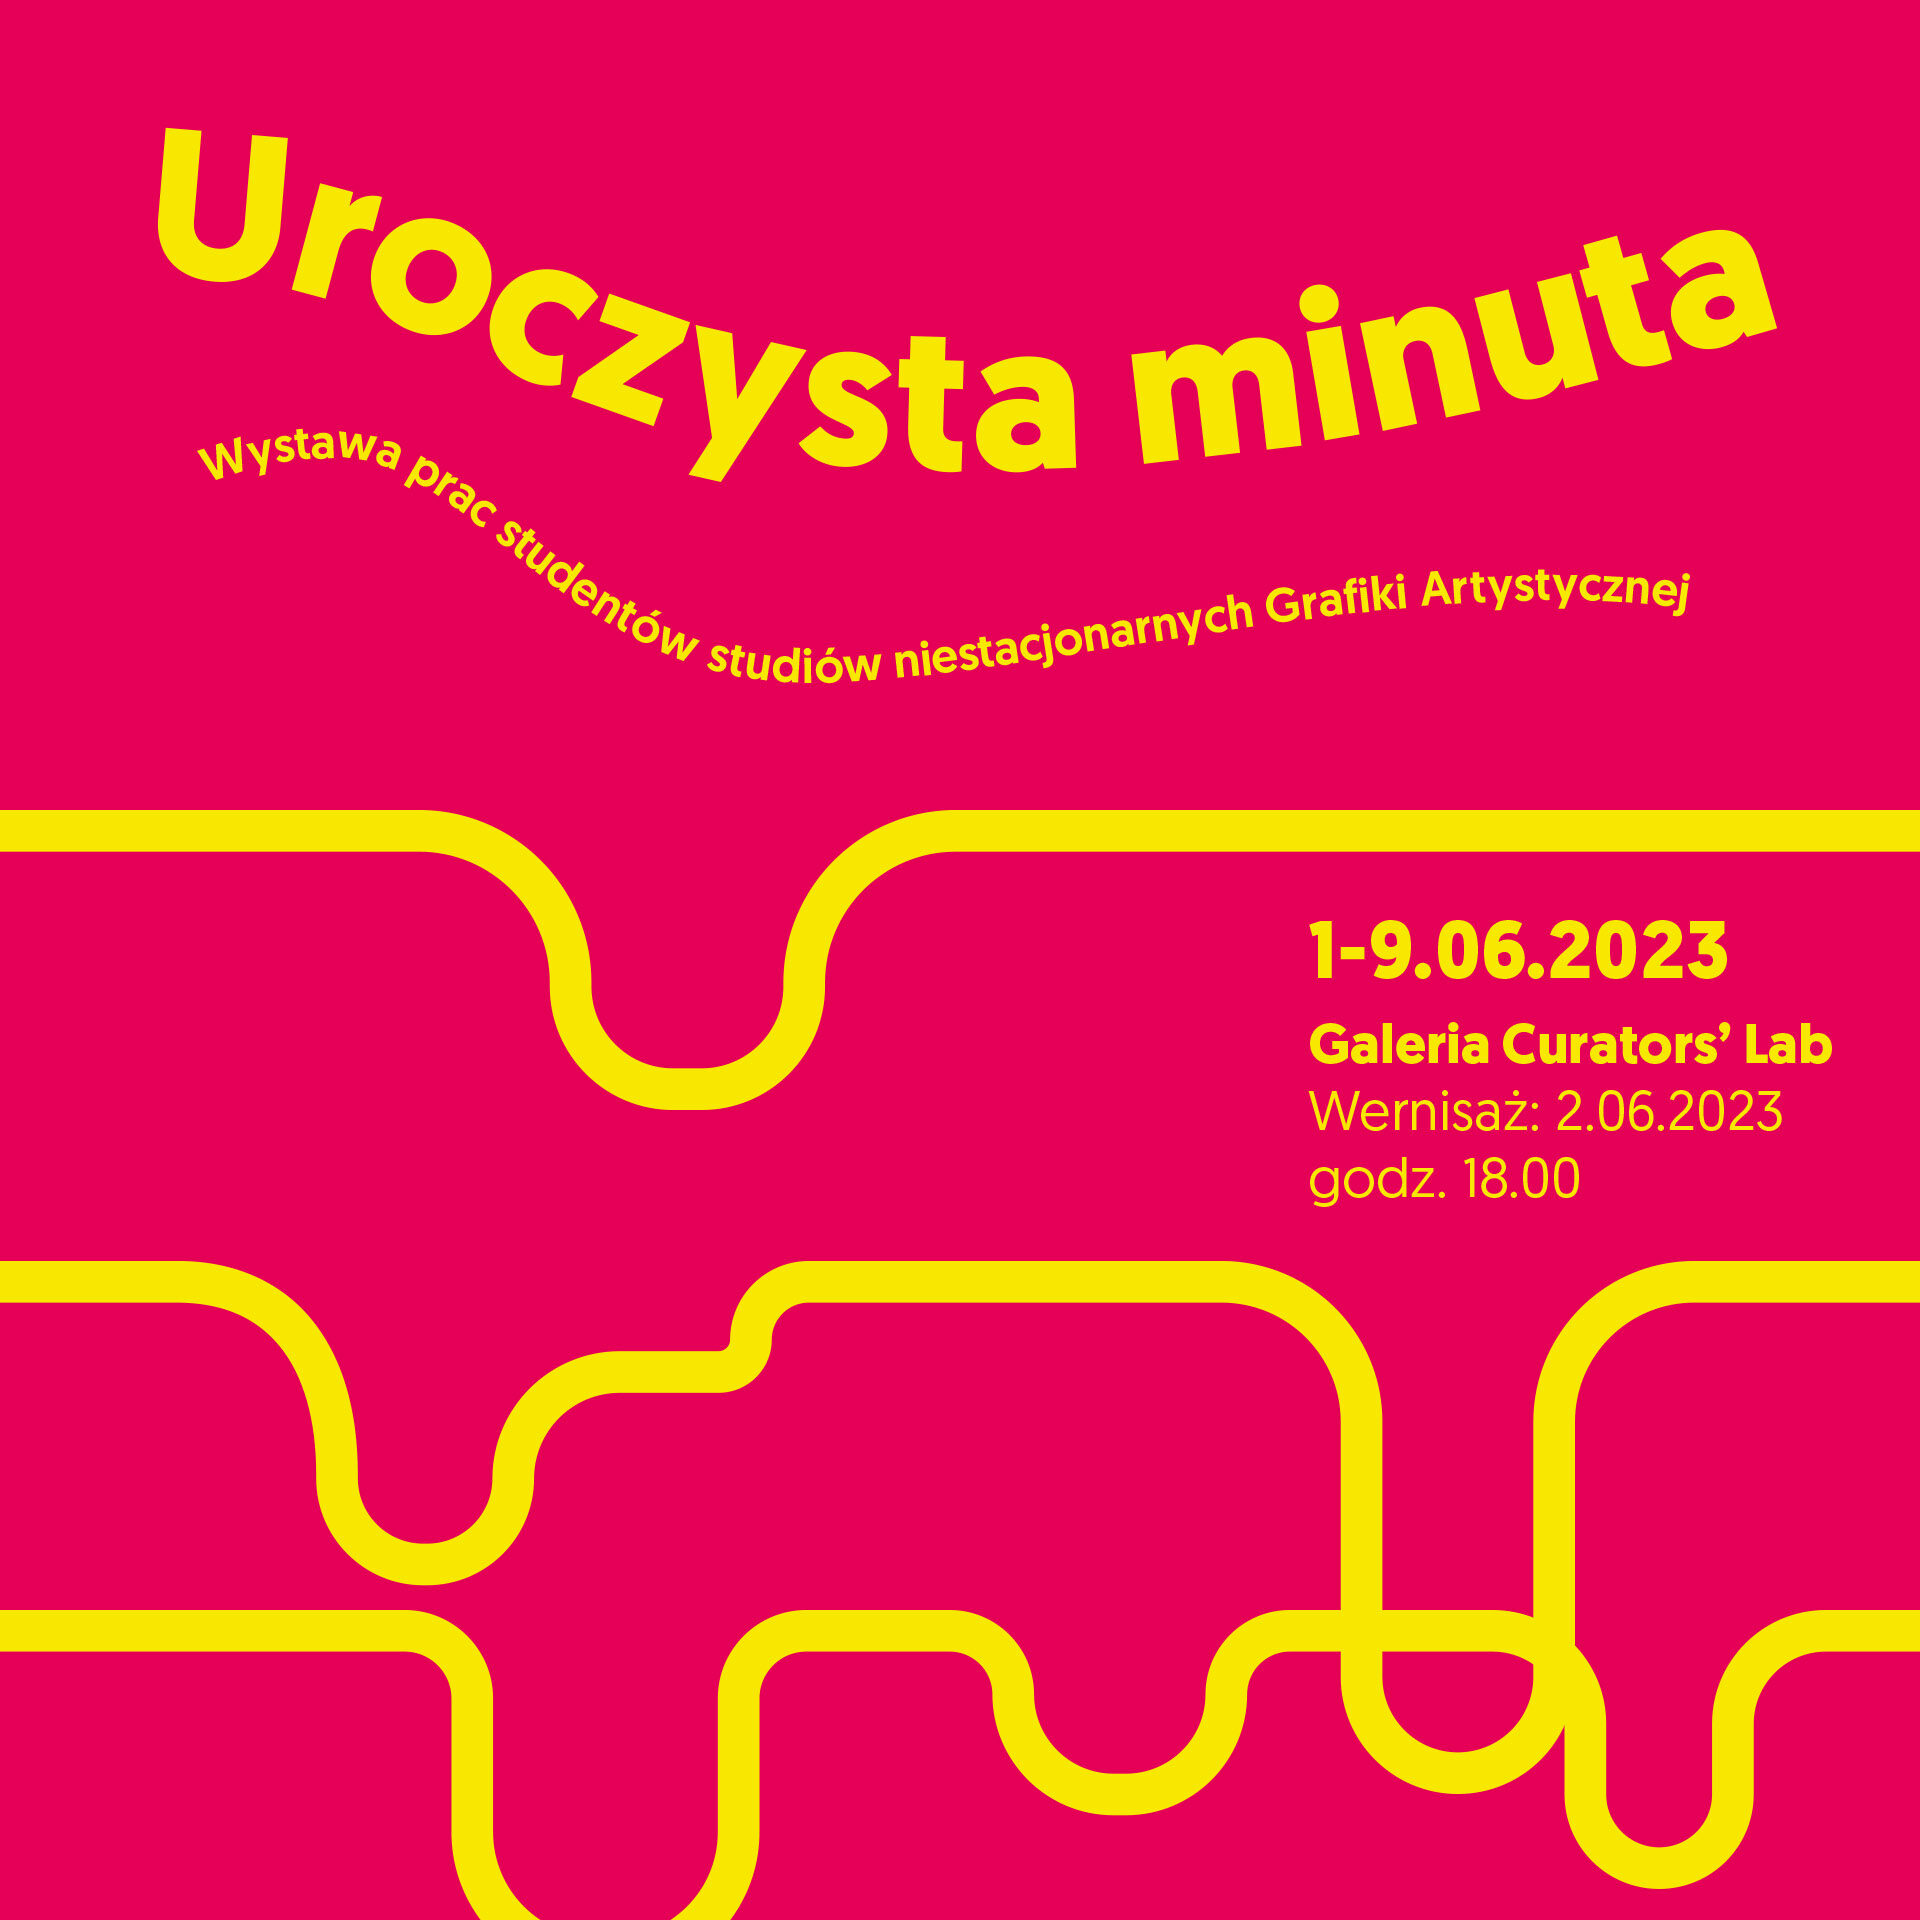 Plakat informujący o wystawie; tytuł, czas, data i miejsce.